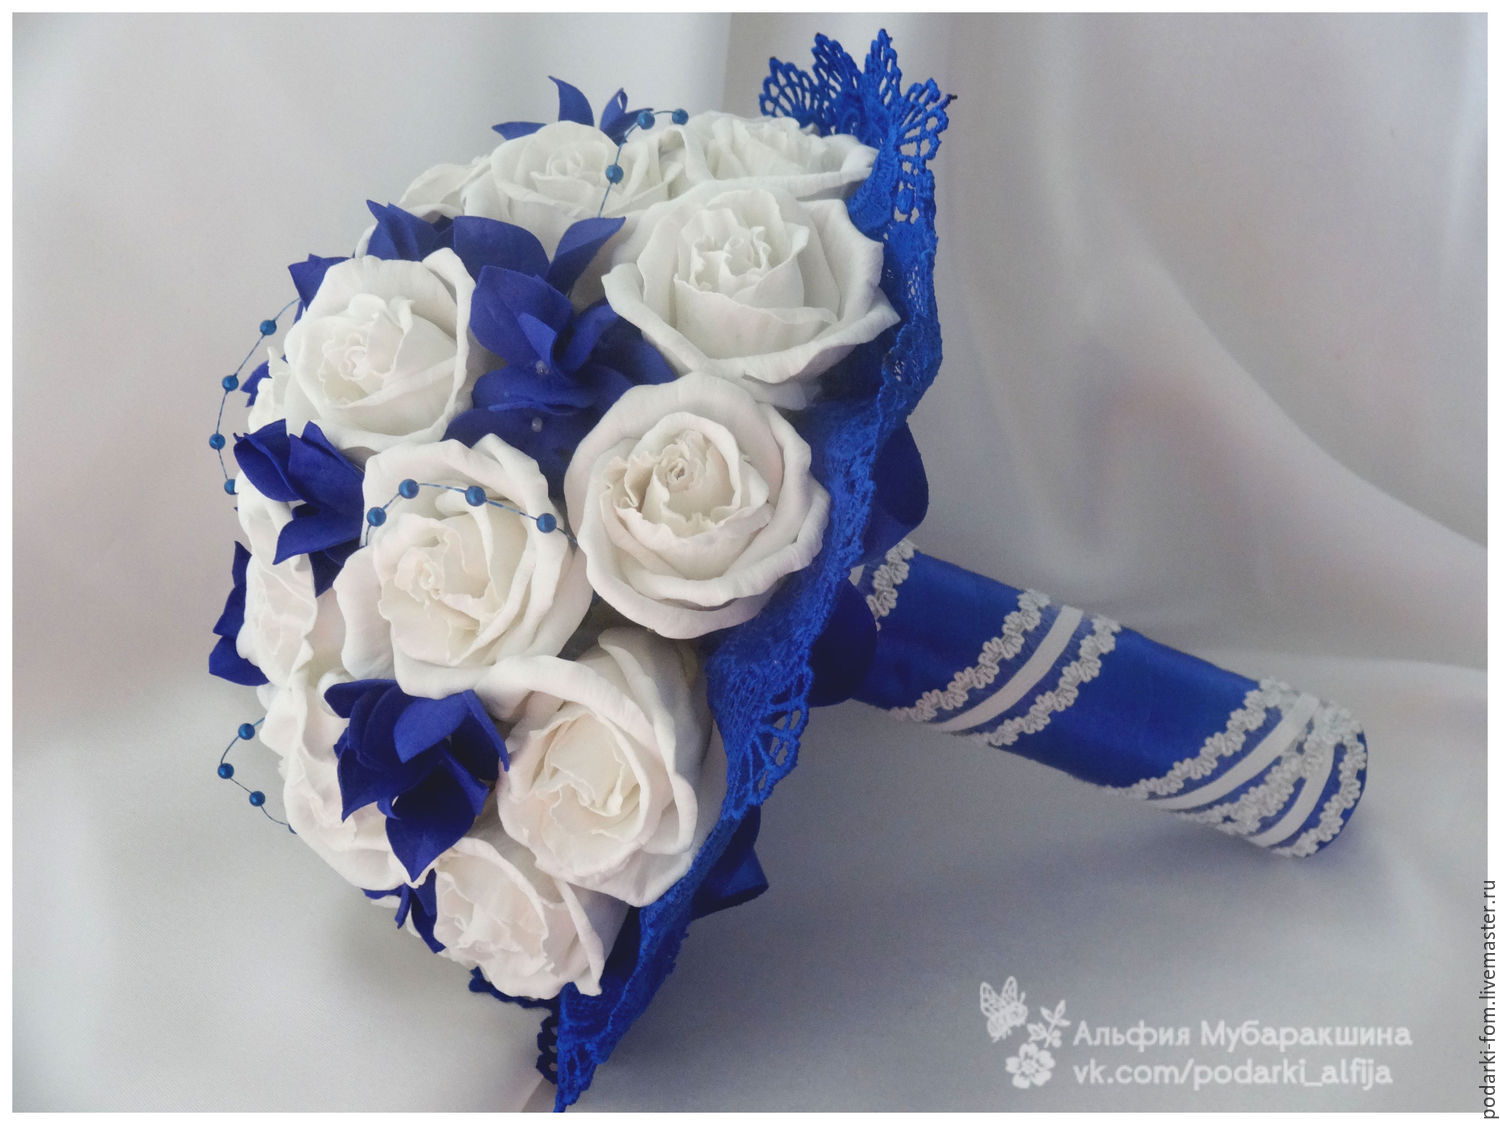 Синий свадебный букет невесты